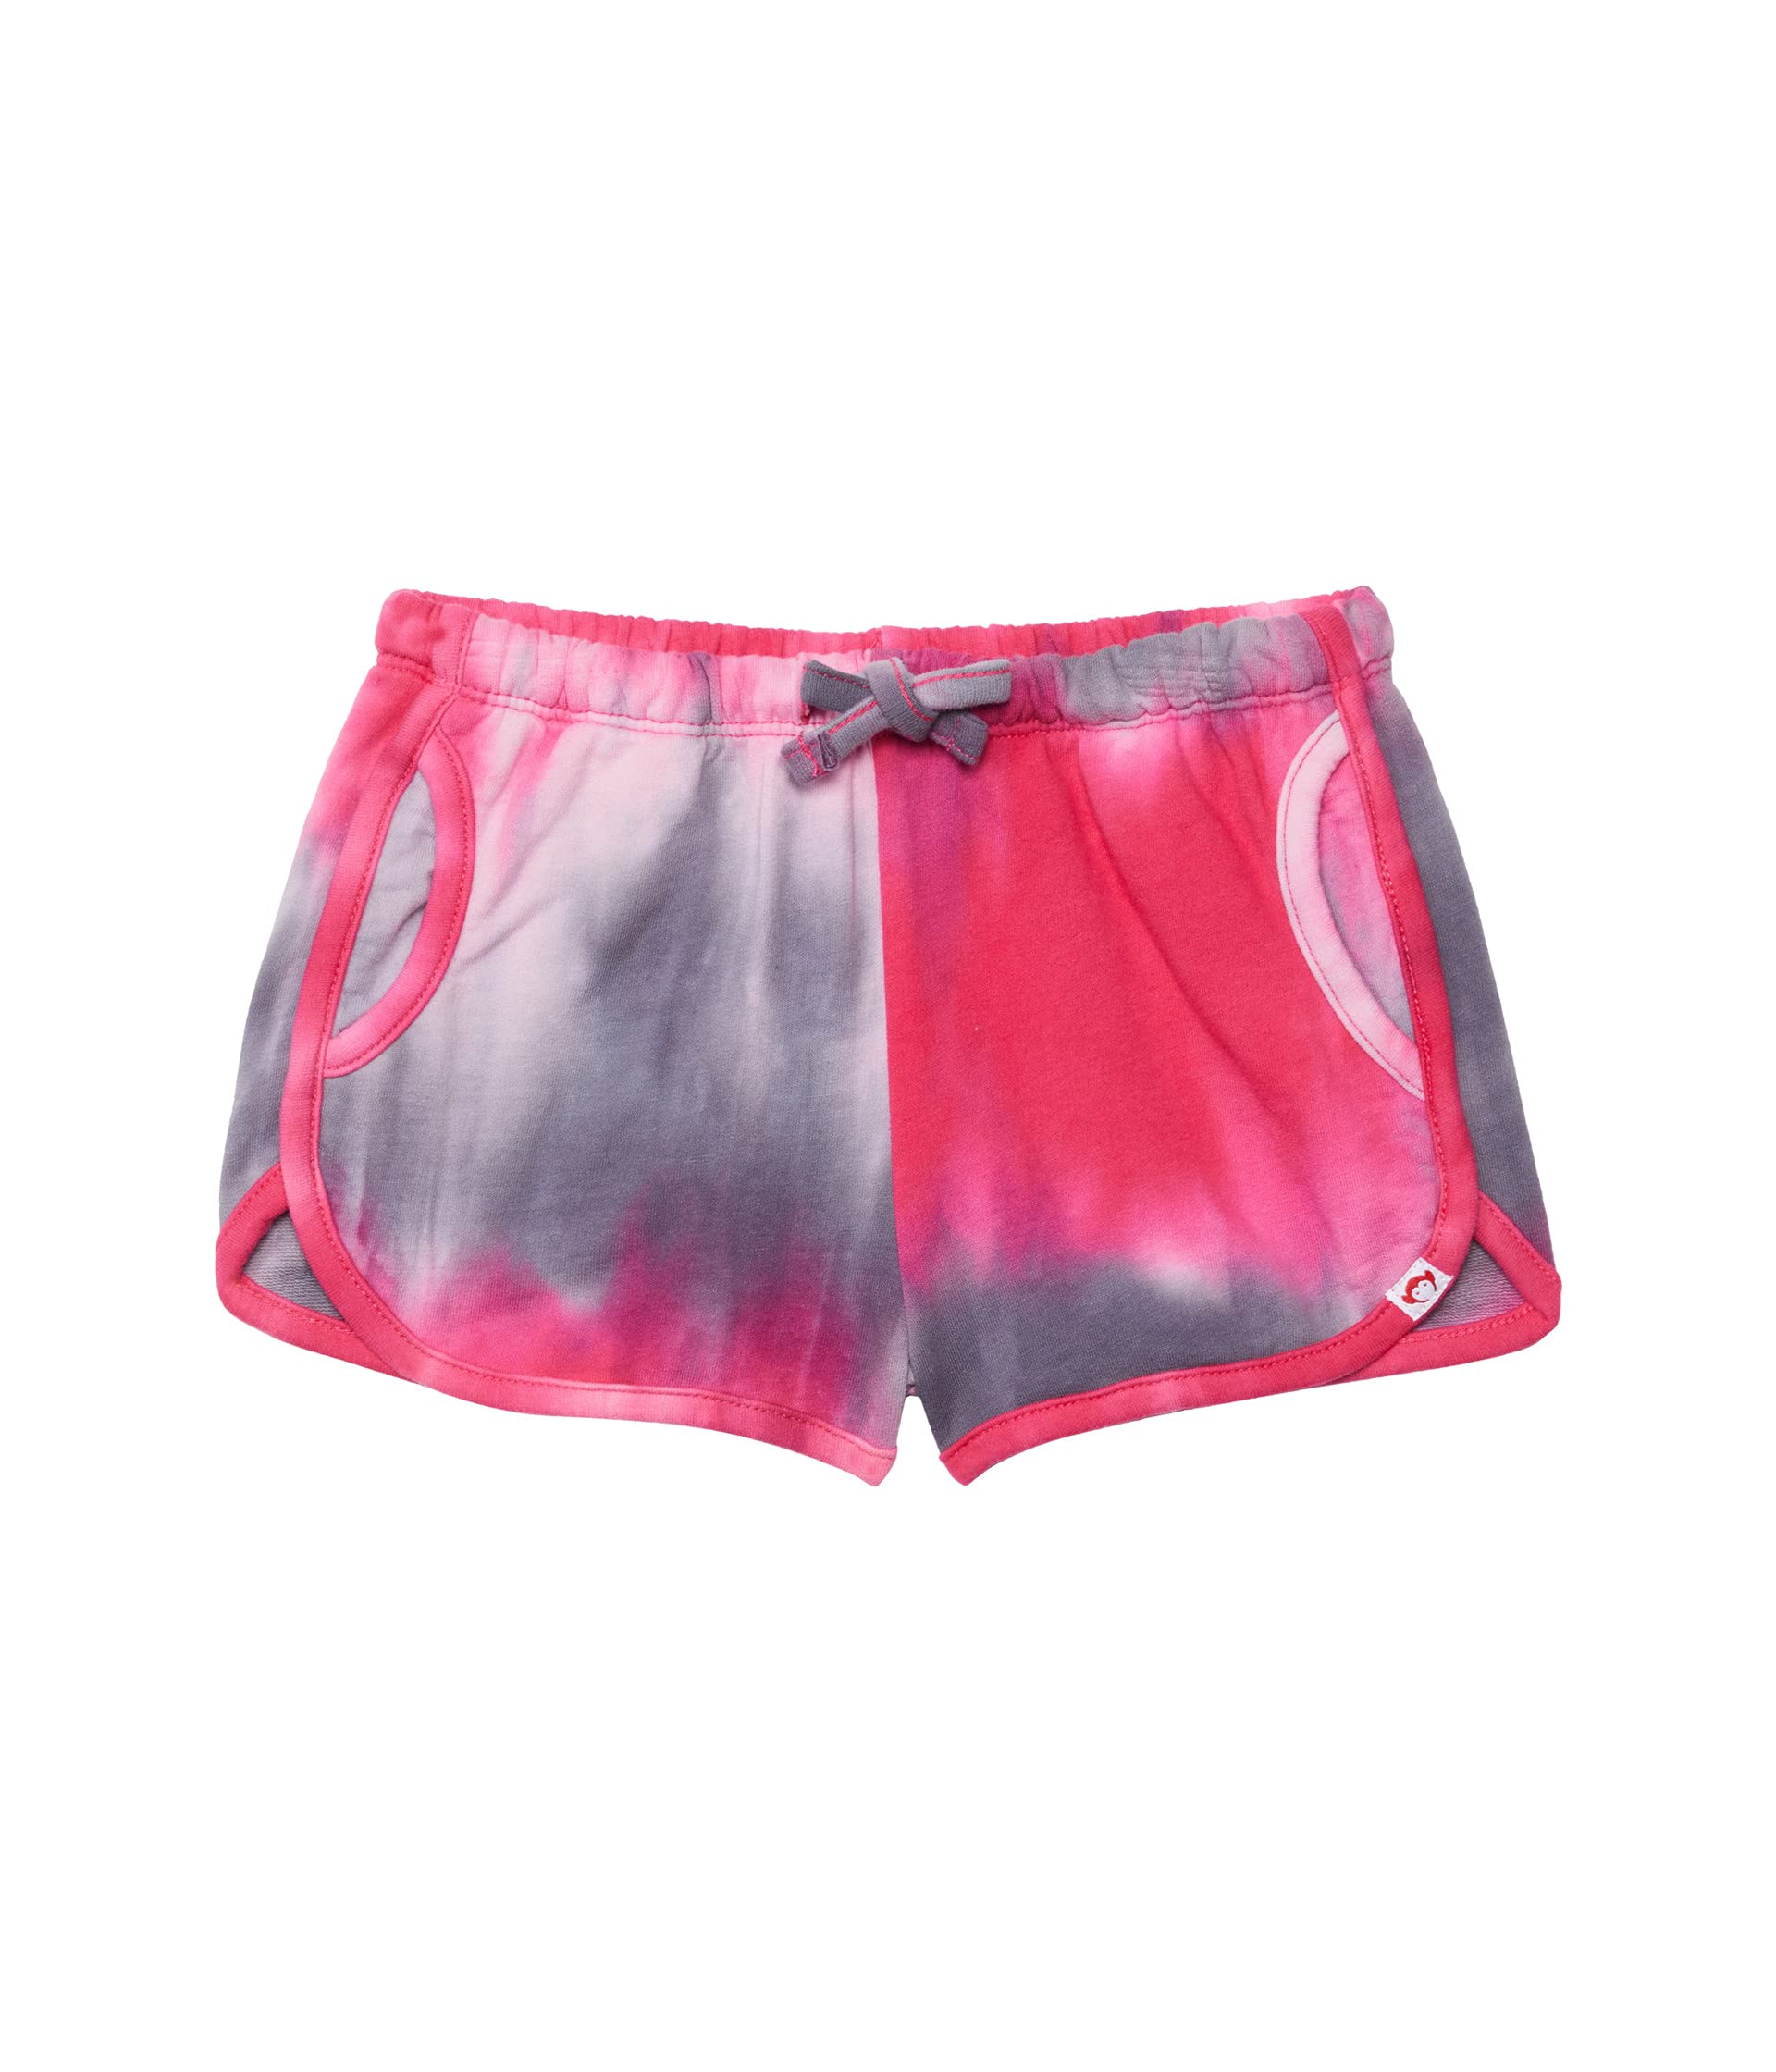 Шорты Appaman Kids, Sierra Shorts шорты appaman sierra shorts цвет pink tie dye